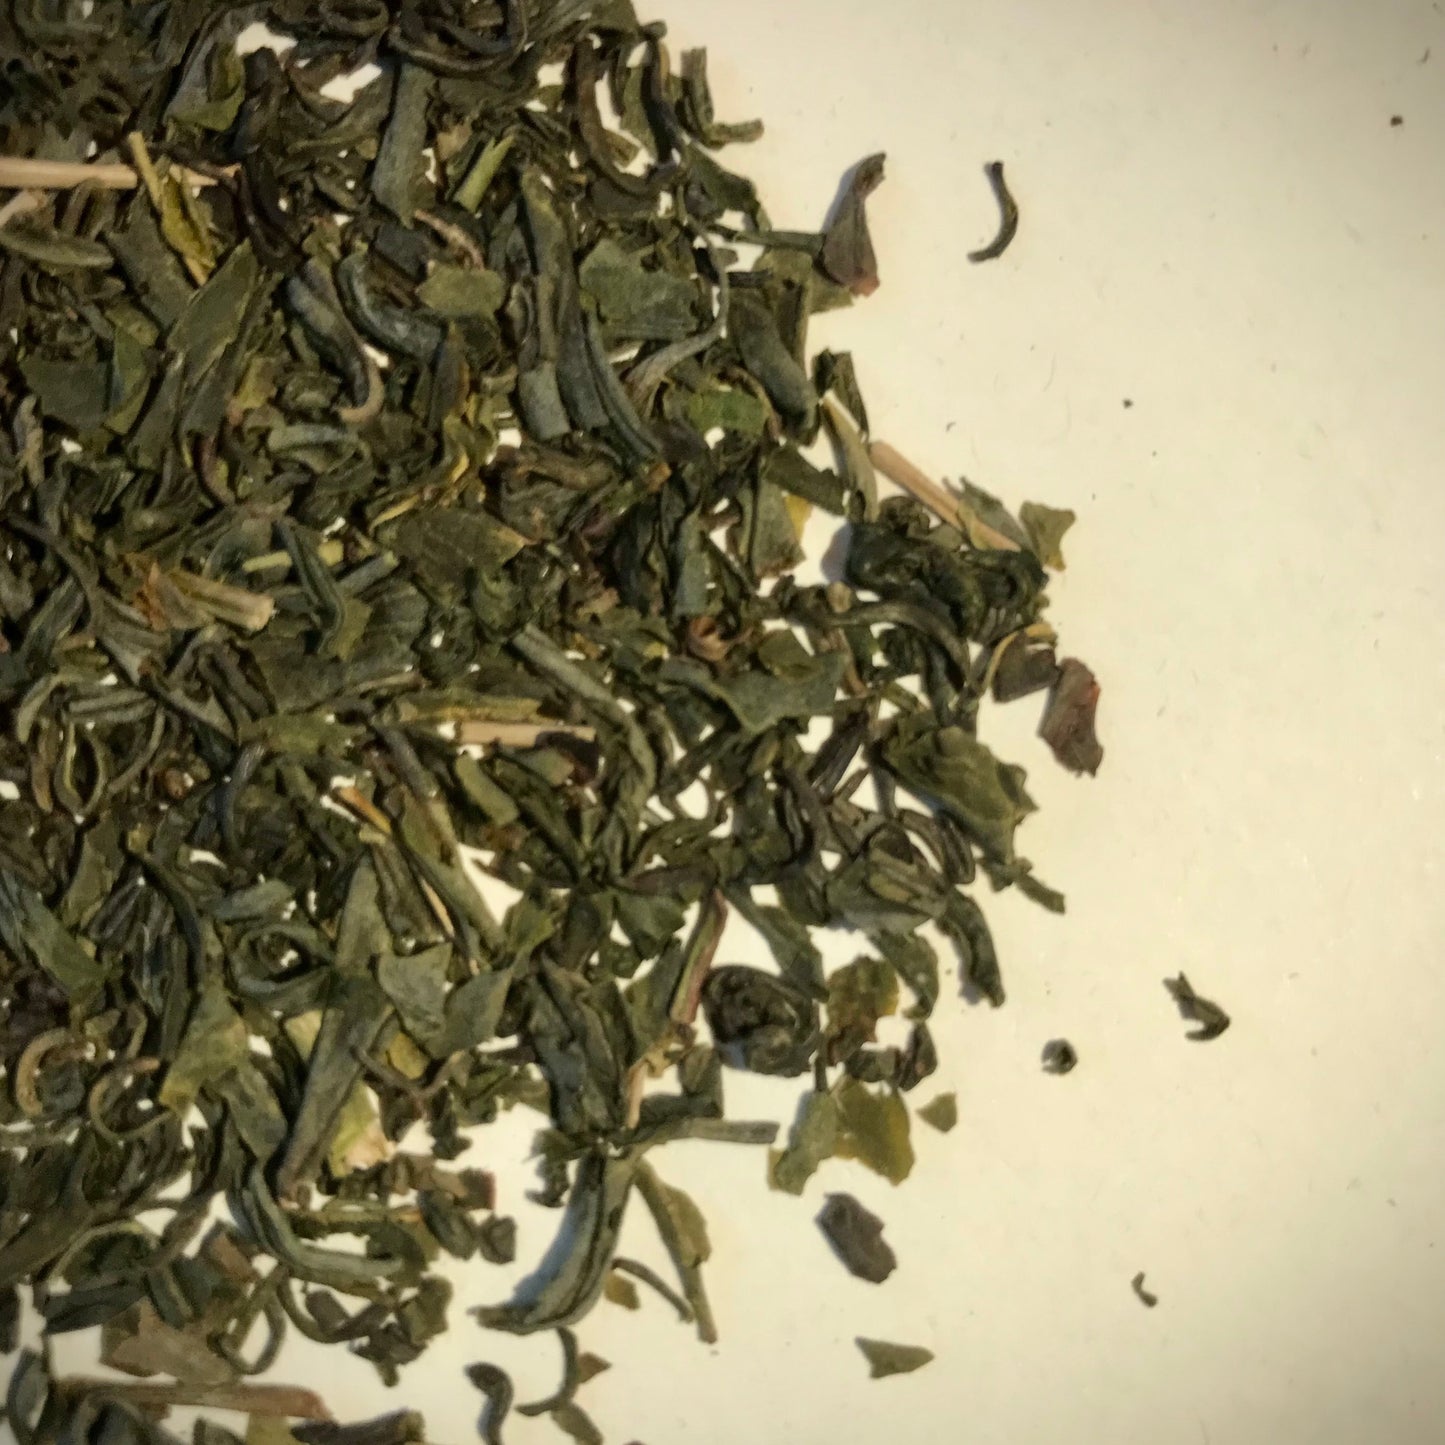 Loose Leaf Tea, Supernatural Green Tea, Japan